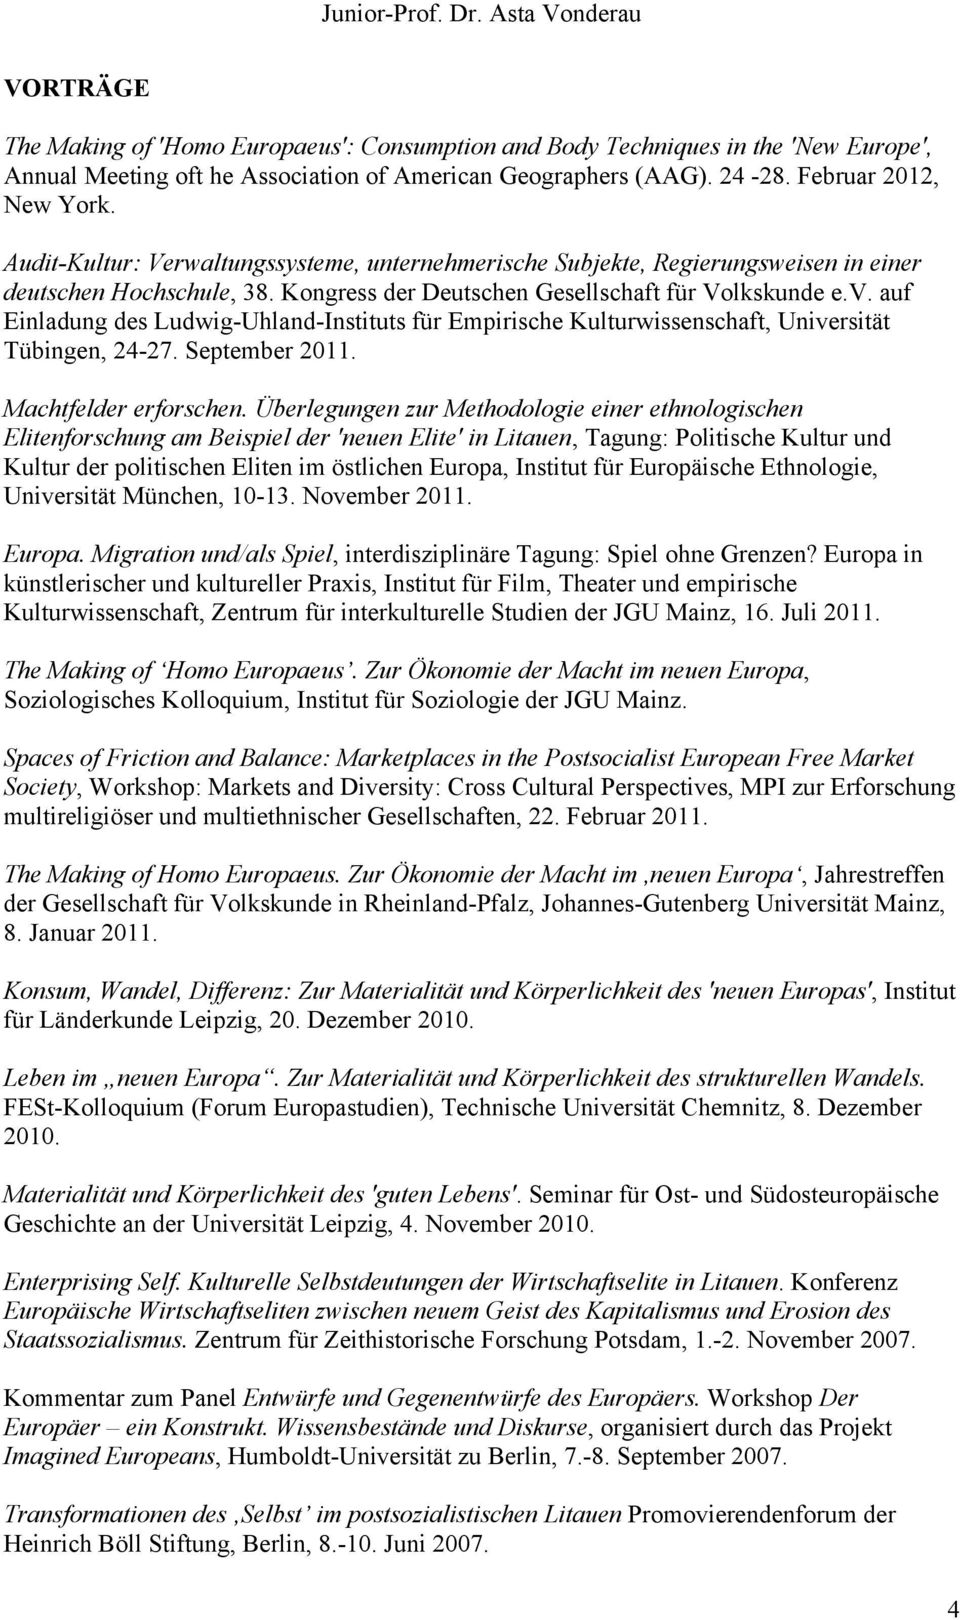 auf Einladung des Ludwig-Uhland-Instituts für Empirische Kulturwissenschaft, Universität Tübingen, 24-27. September 2011. Machtfelder erforschen.